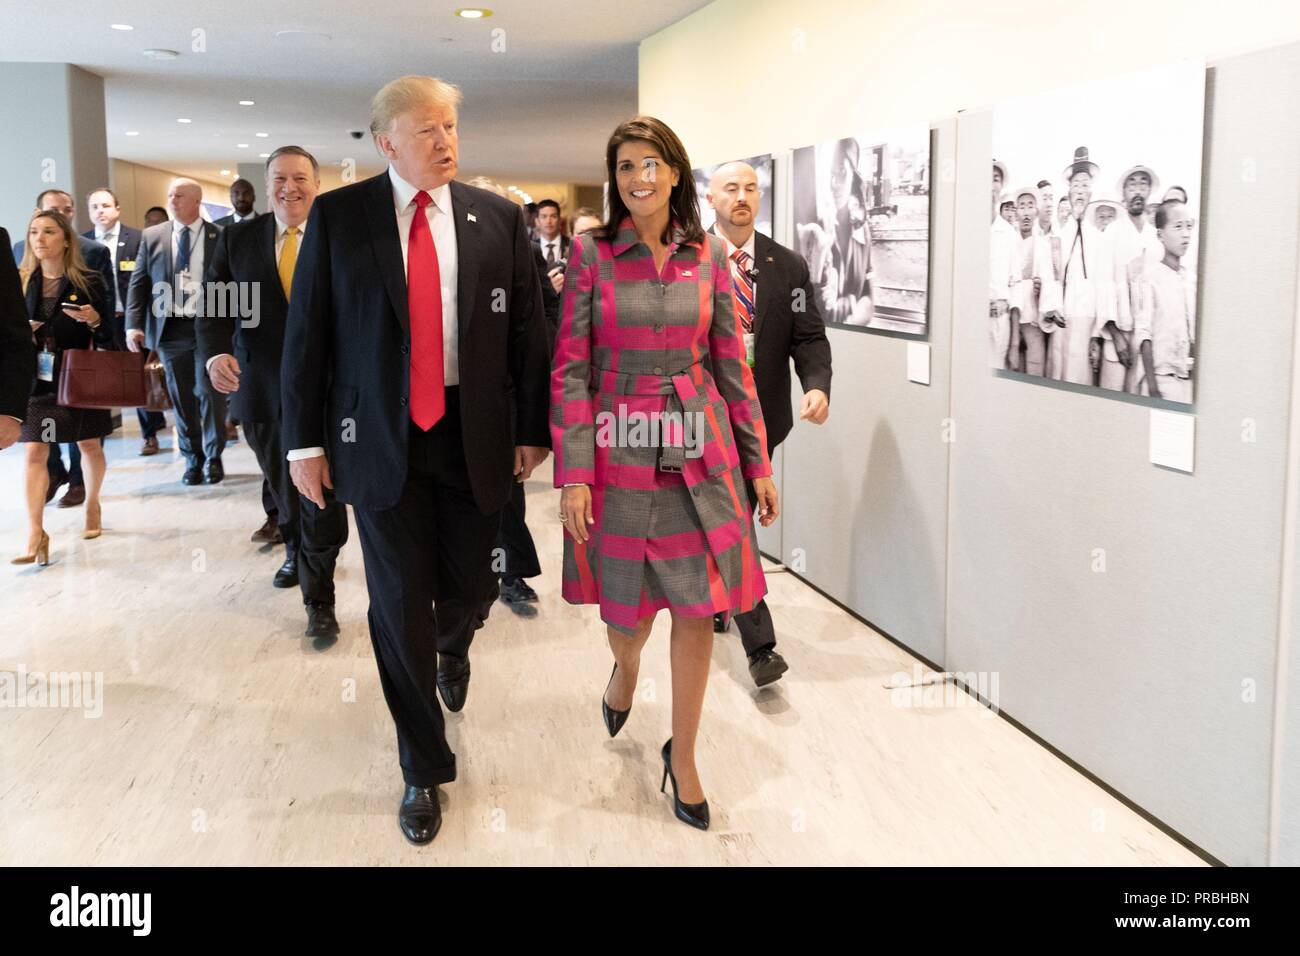 Us-Präsident Donald Trump Spaziergänge mit UN-Botschafter Nikki Haley, wie sie im Hauptquartier der Vereinten Nationen am 24. September angekommen, 2018 in New York, New York. Trump und Haley nahmen an einem Weltweiten Aufruf zur Aktion zum Drogenproblem. Stockfoto